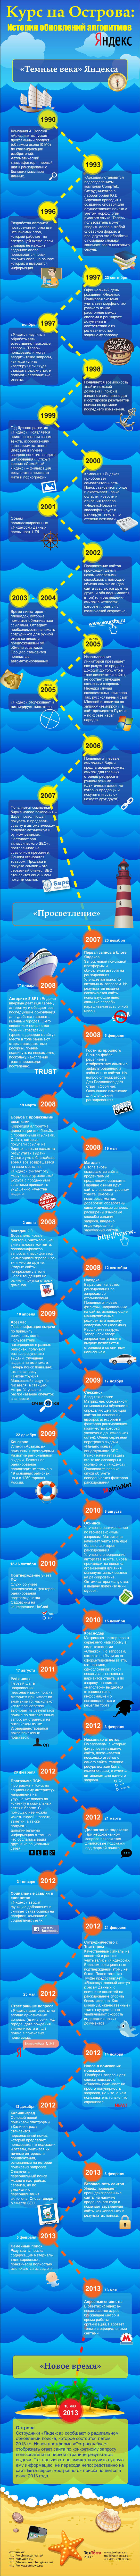 Курс на Острова: История обновлений алгоритмов Яндекс (Инфографика)